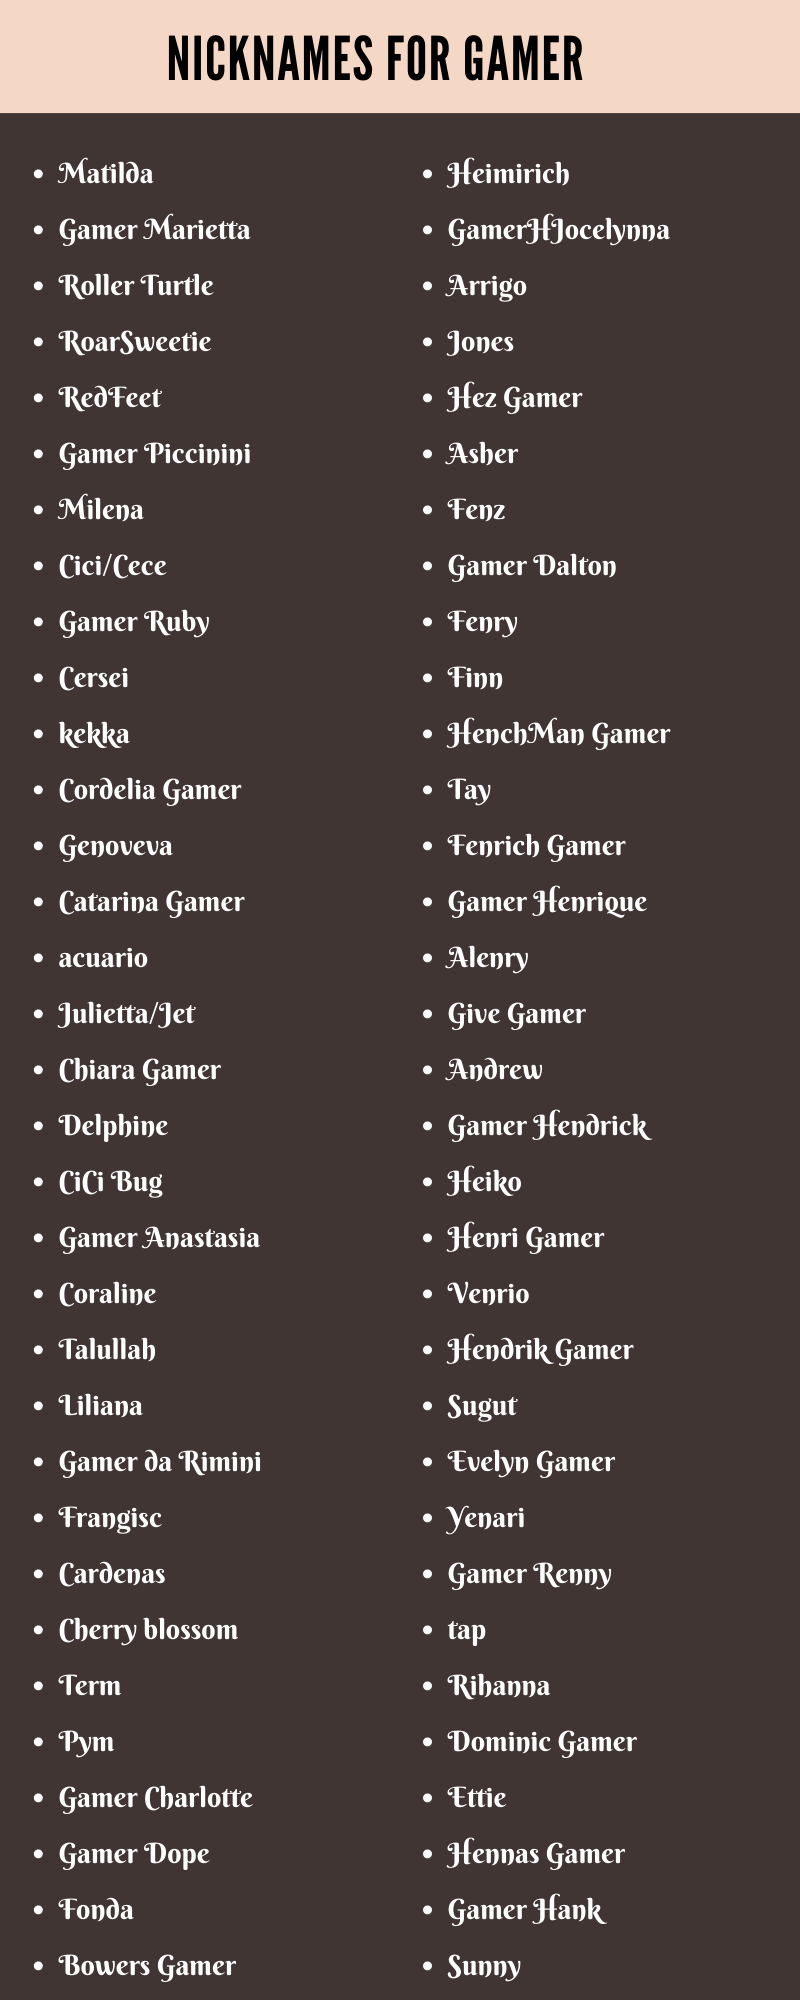 Nicknames For Gamer